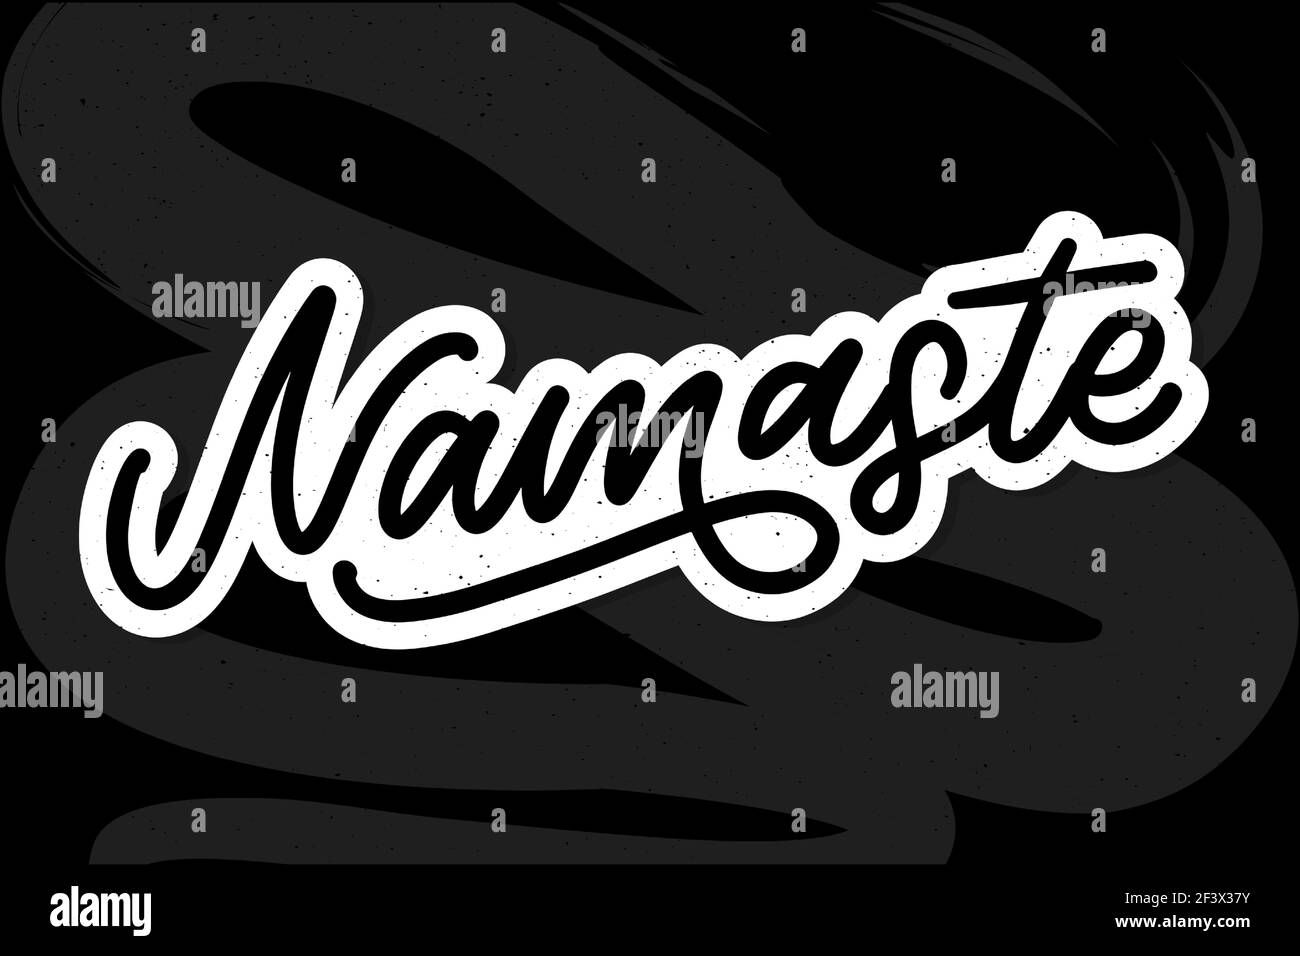 Lettrage Namaste dessiné à la main. Salutation indienne, Bonjour en hindi. Écriture cursive élégante, calligraphie moderne. Vecteur isolé Illustration de Vecteur